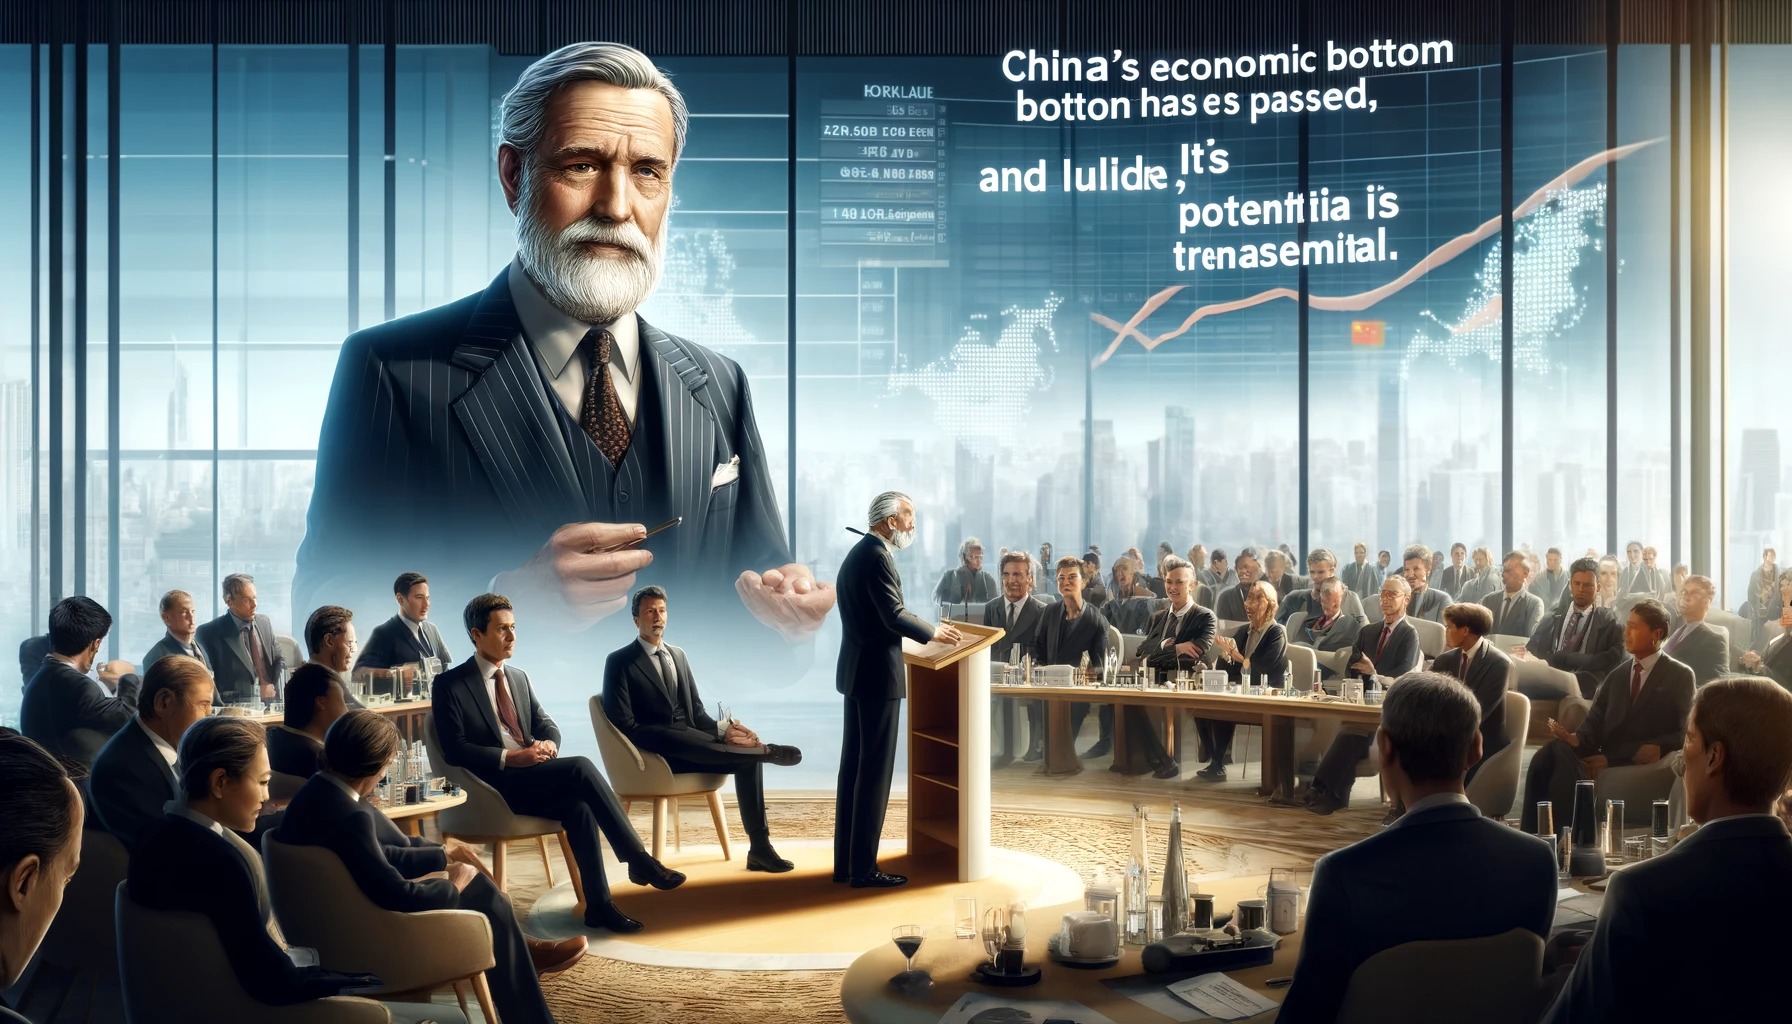 天才投資家のジム・ロジャーズ氏「中国経済の底は過ぎ去った。日本と違いポテンシャルが凄い」